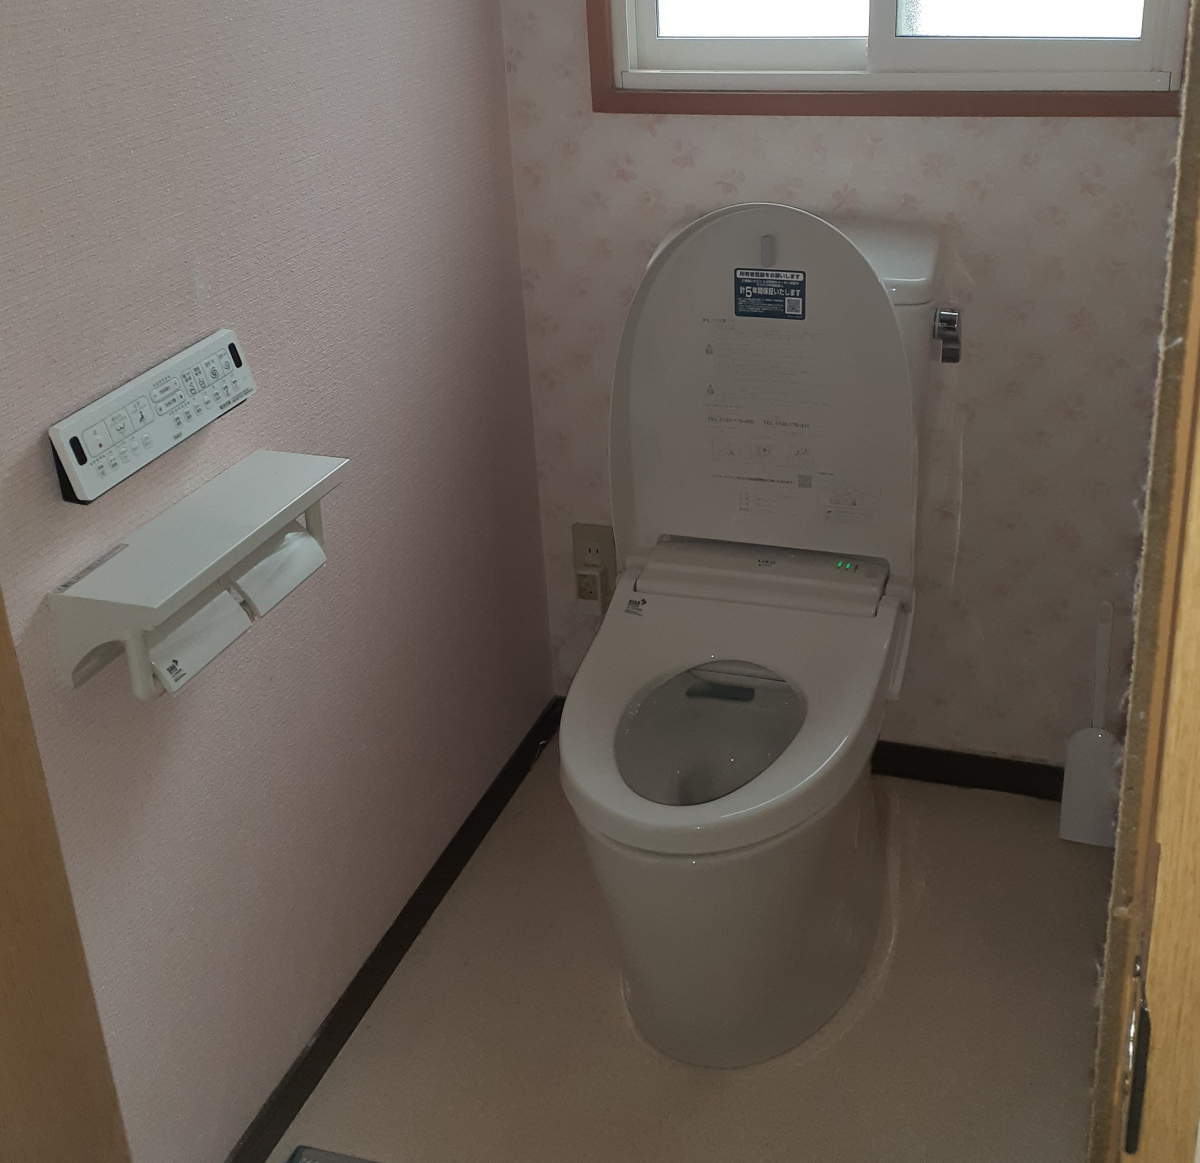 鎌田トーヨー住器のトイレ取替工事🚽の施工後の写真1